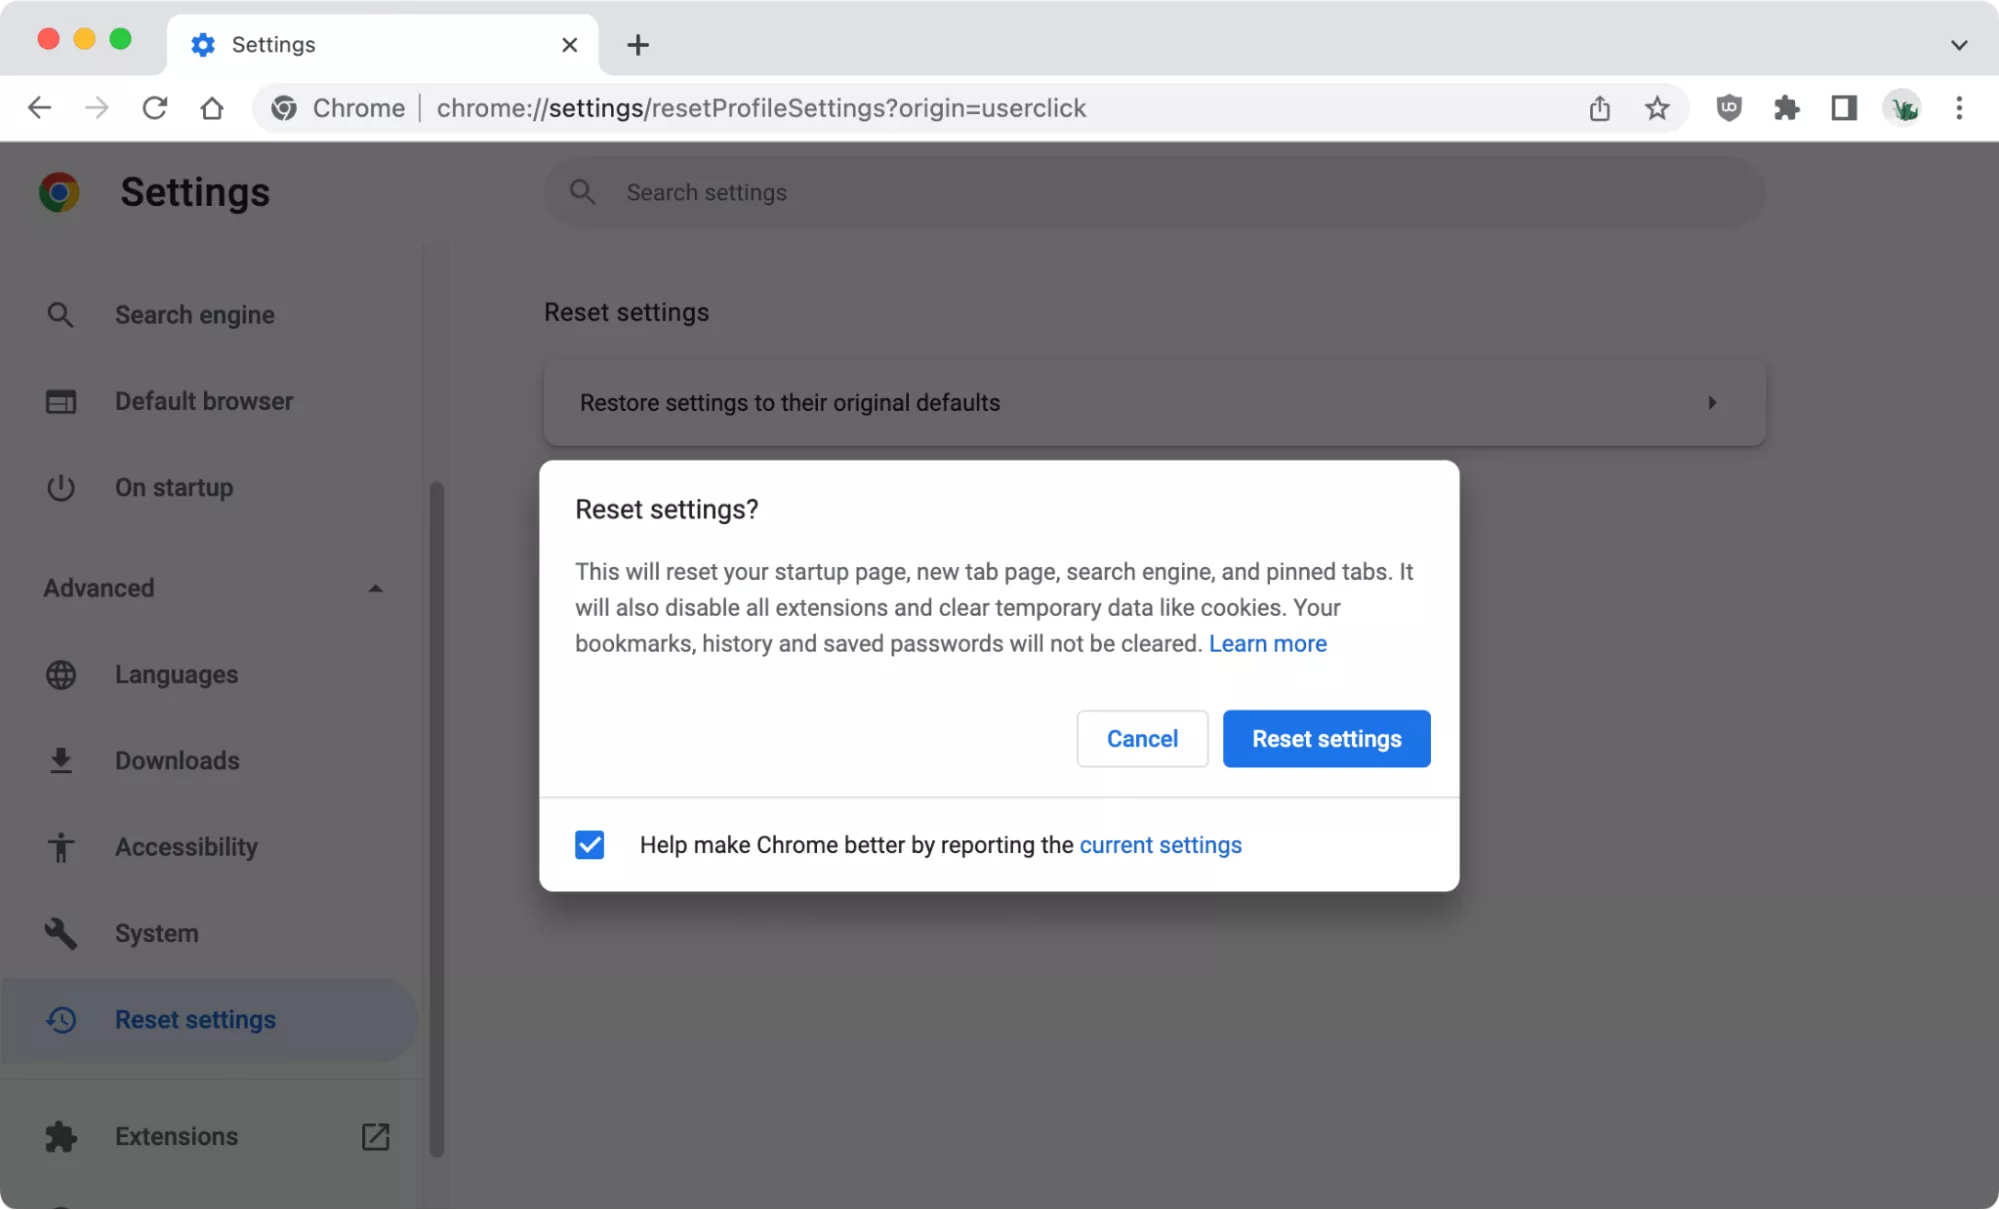 Chrome Settings > Reset settings